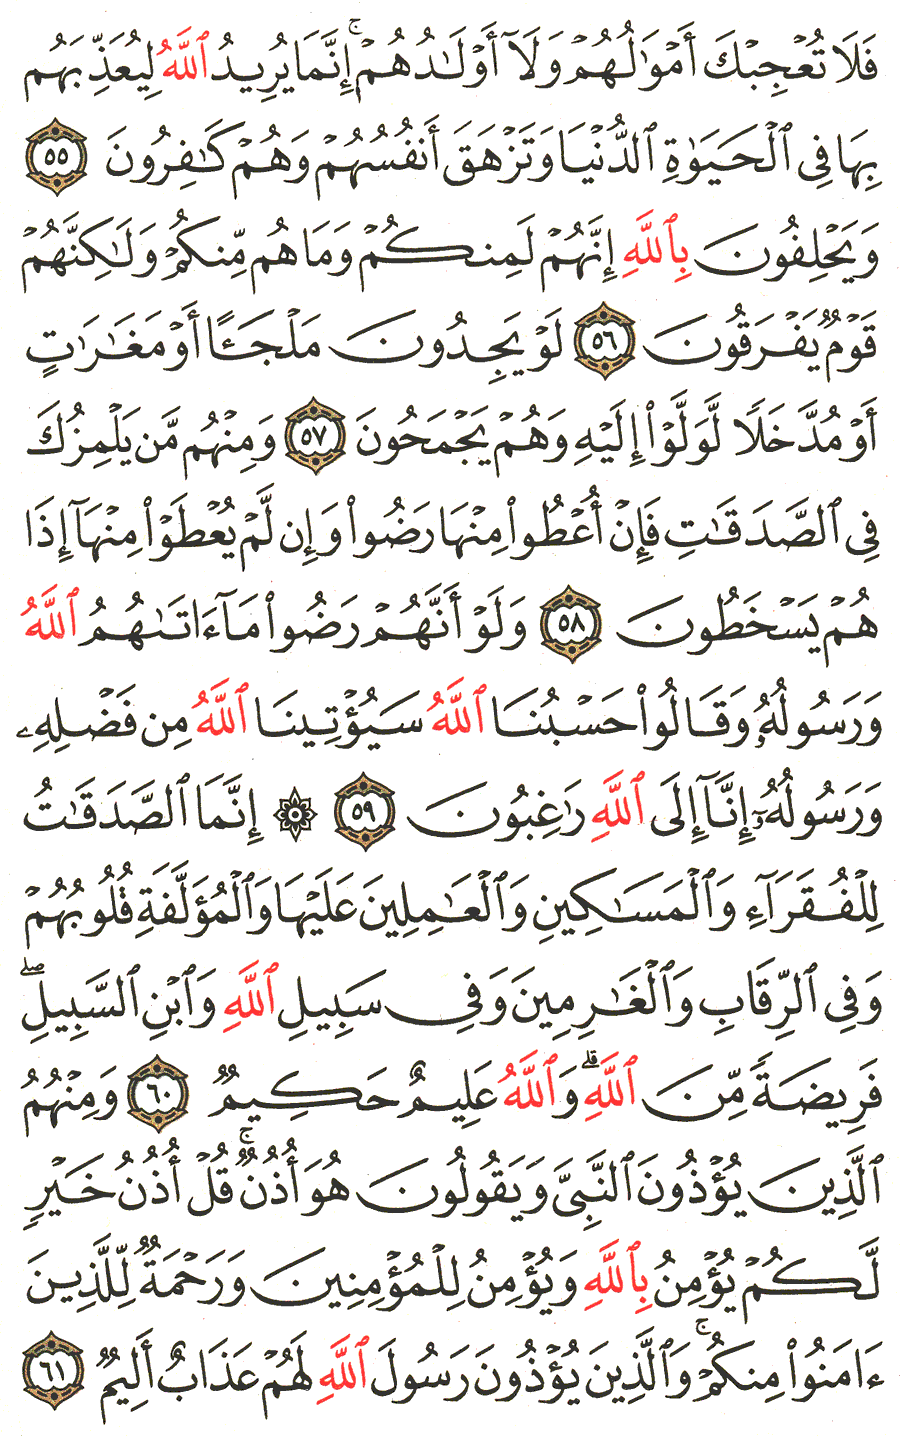 الصفحة 196 من القرآن الكريم